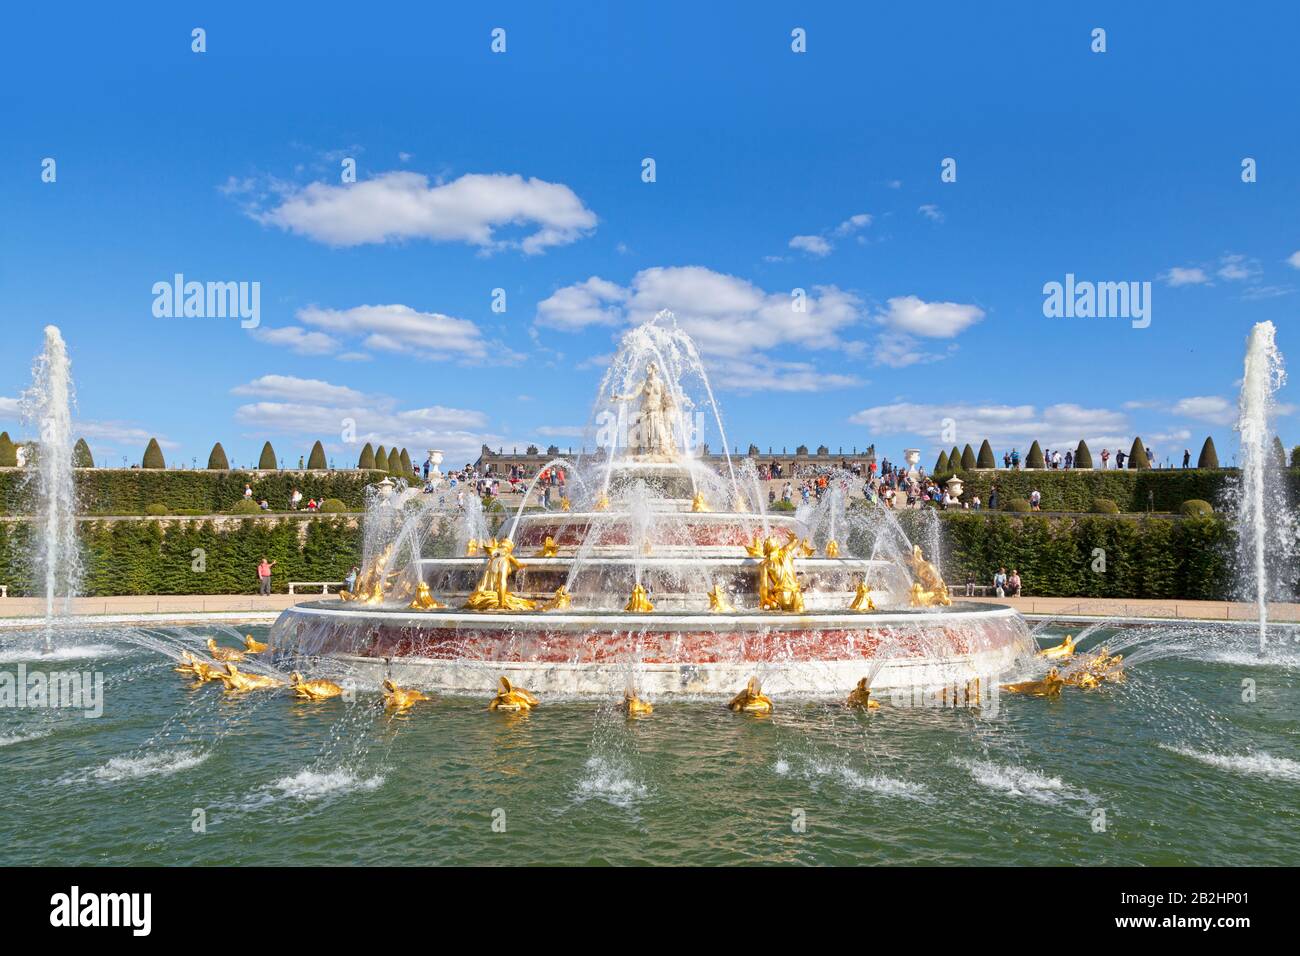 Versailles, Frankreich - 20. August 2017: Das Bassin de Latone liegt an der West-östlichen Achse unmittelbar westlich und unterhalb des Parterre d'Eau. Es ist das erste für Stockfoto